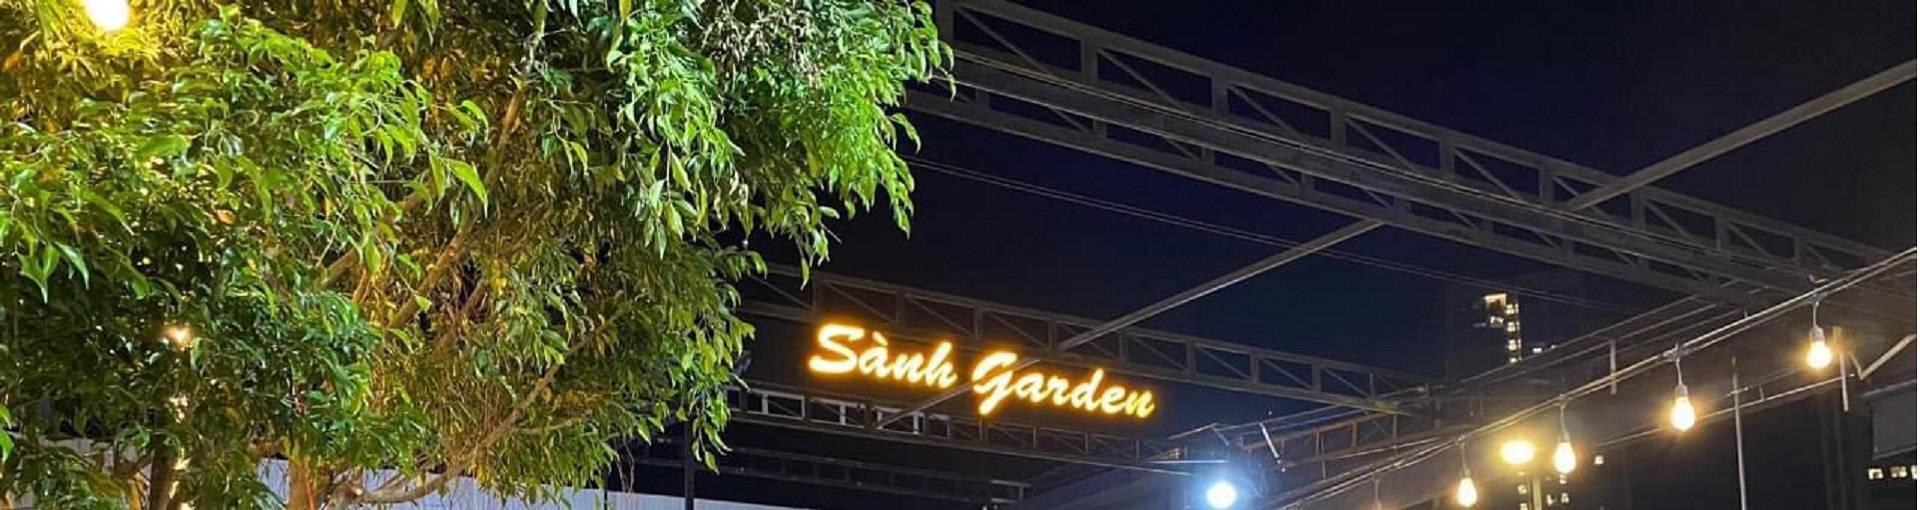 Nhà hàng Sành Garden